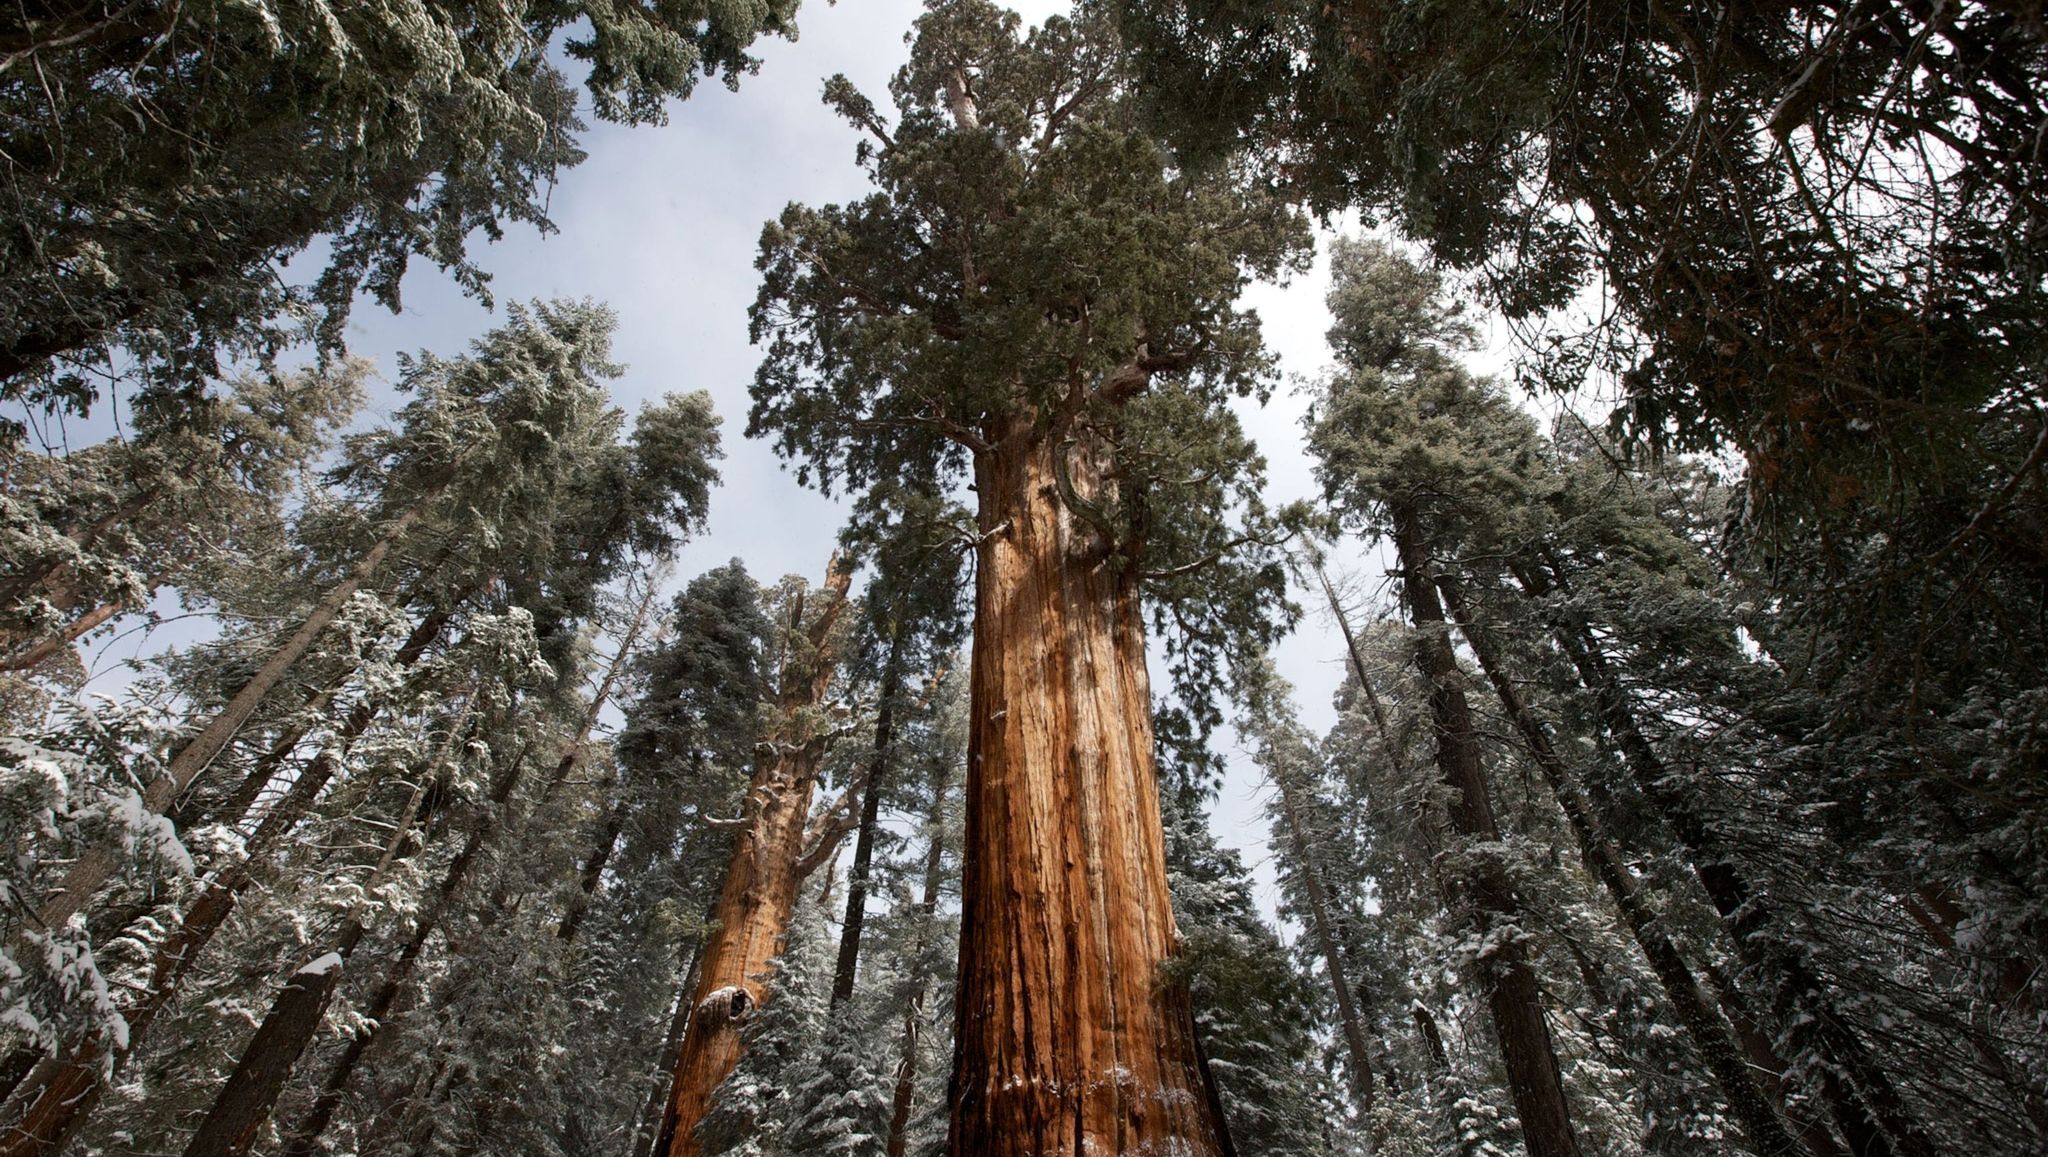 sequoia national park en kings canyon national park in californi zijn schitterende voorbeelden van oerbossen in de verenigde staten